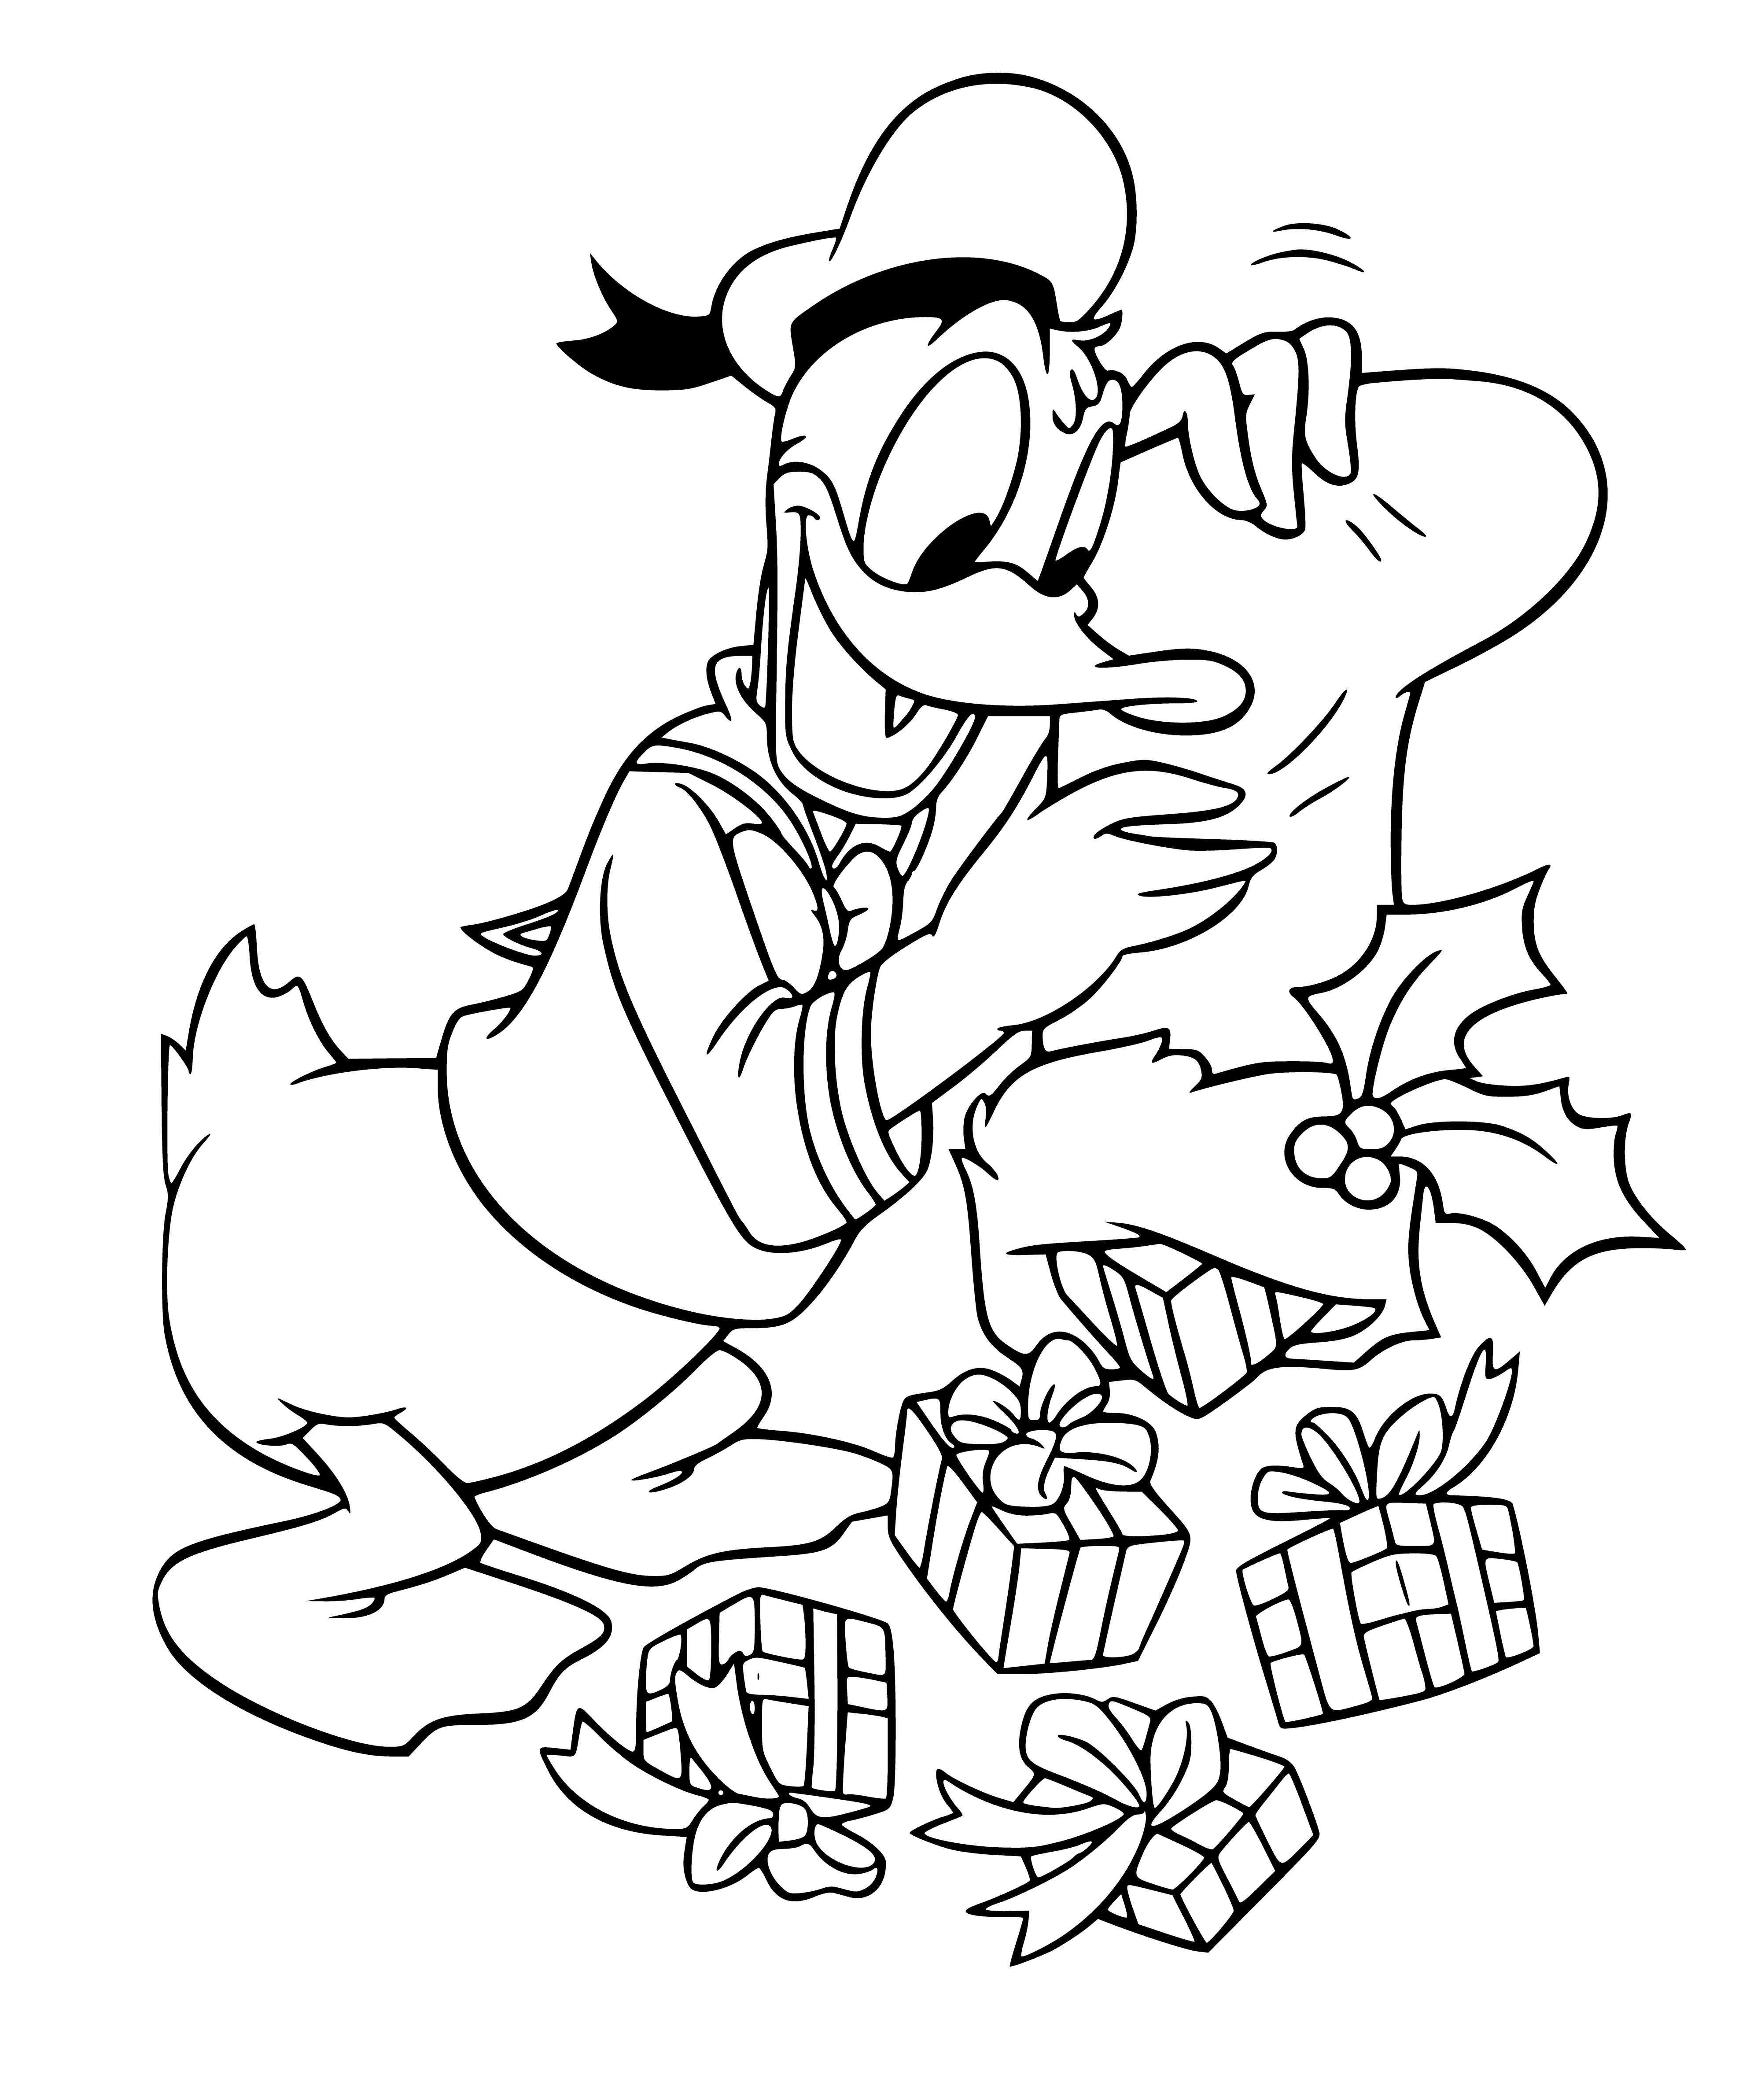 Donald en geschenken kleurplaat